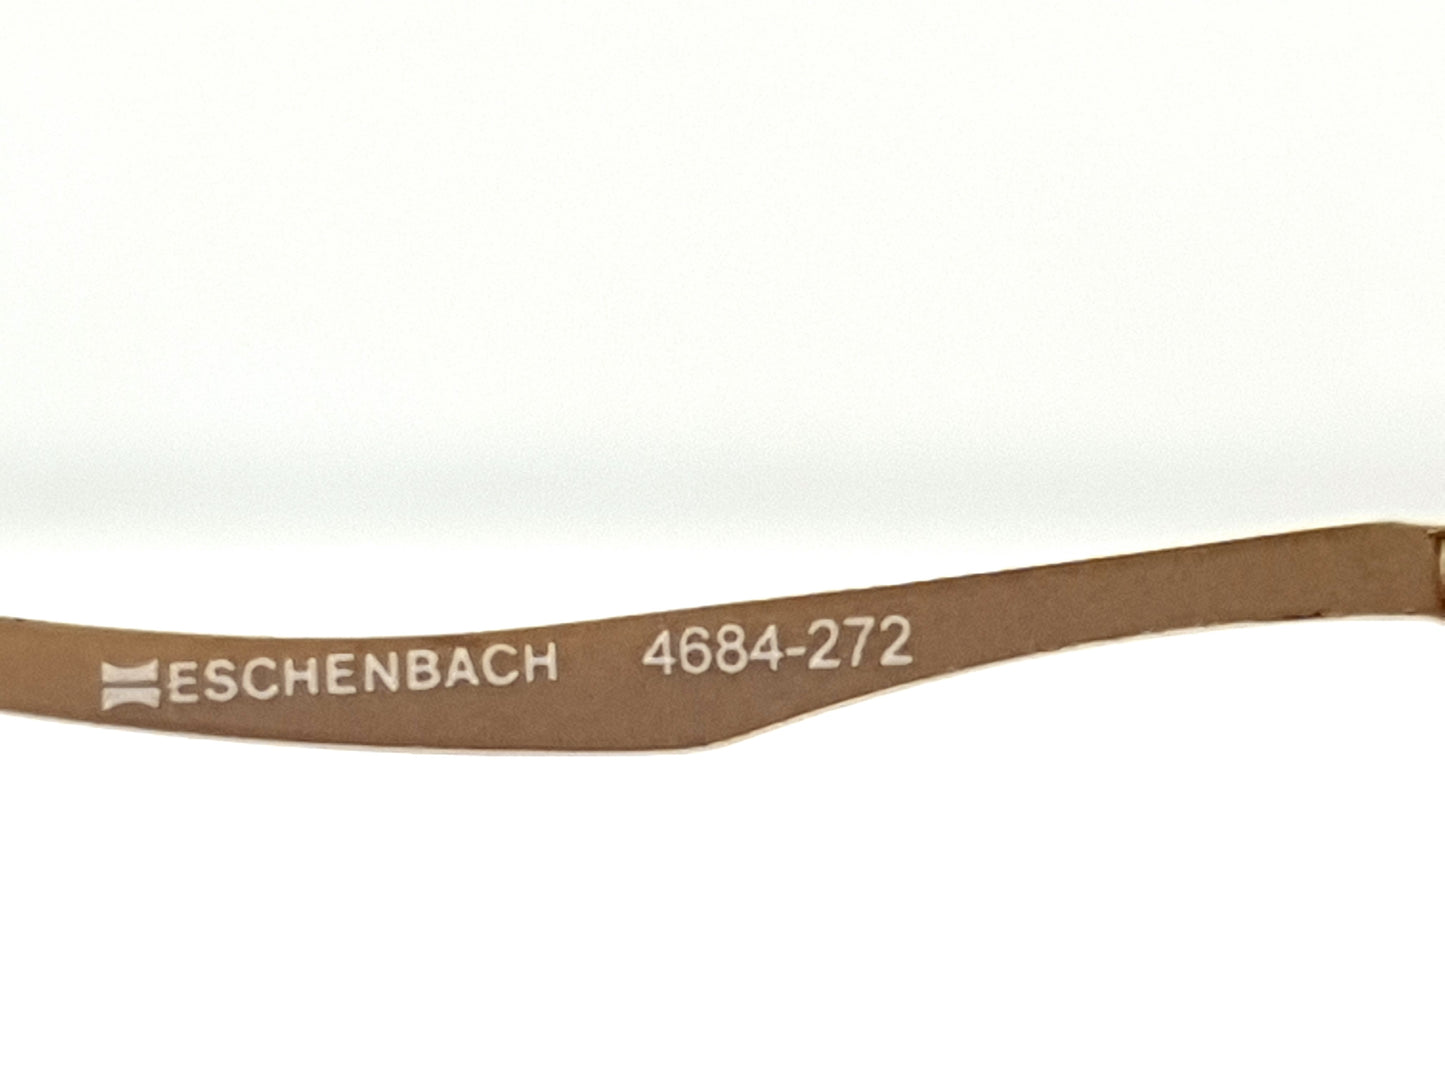 ESCHENBACH 4684-272 EN 1836 1995-3